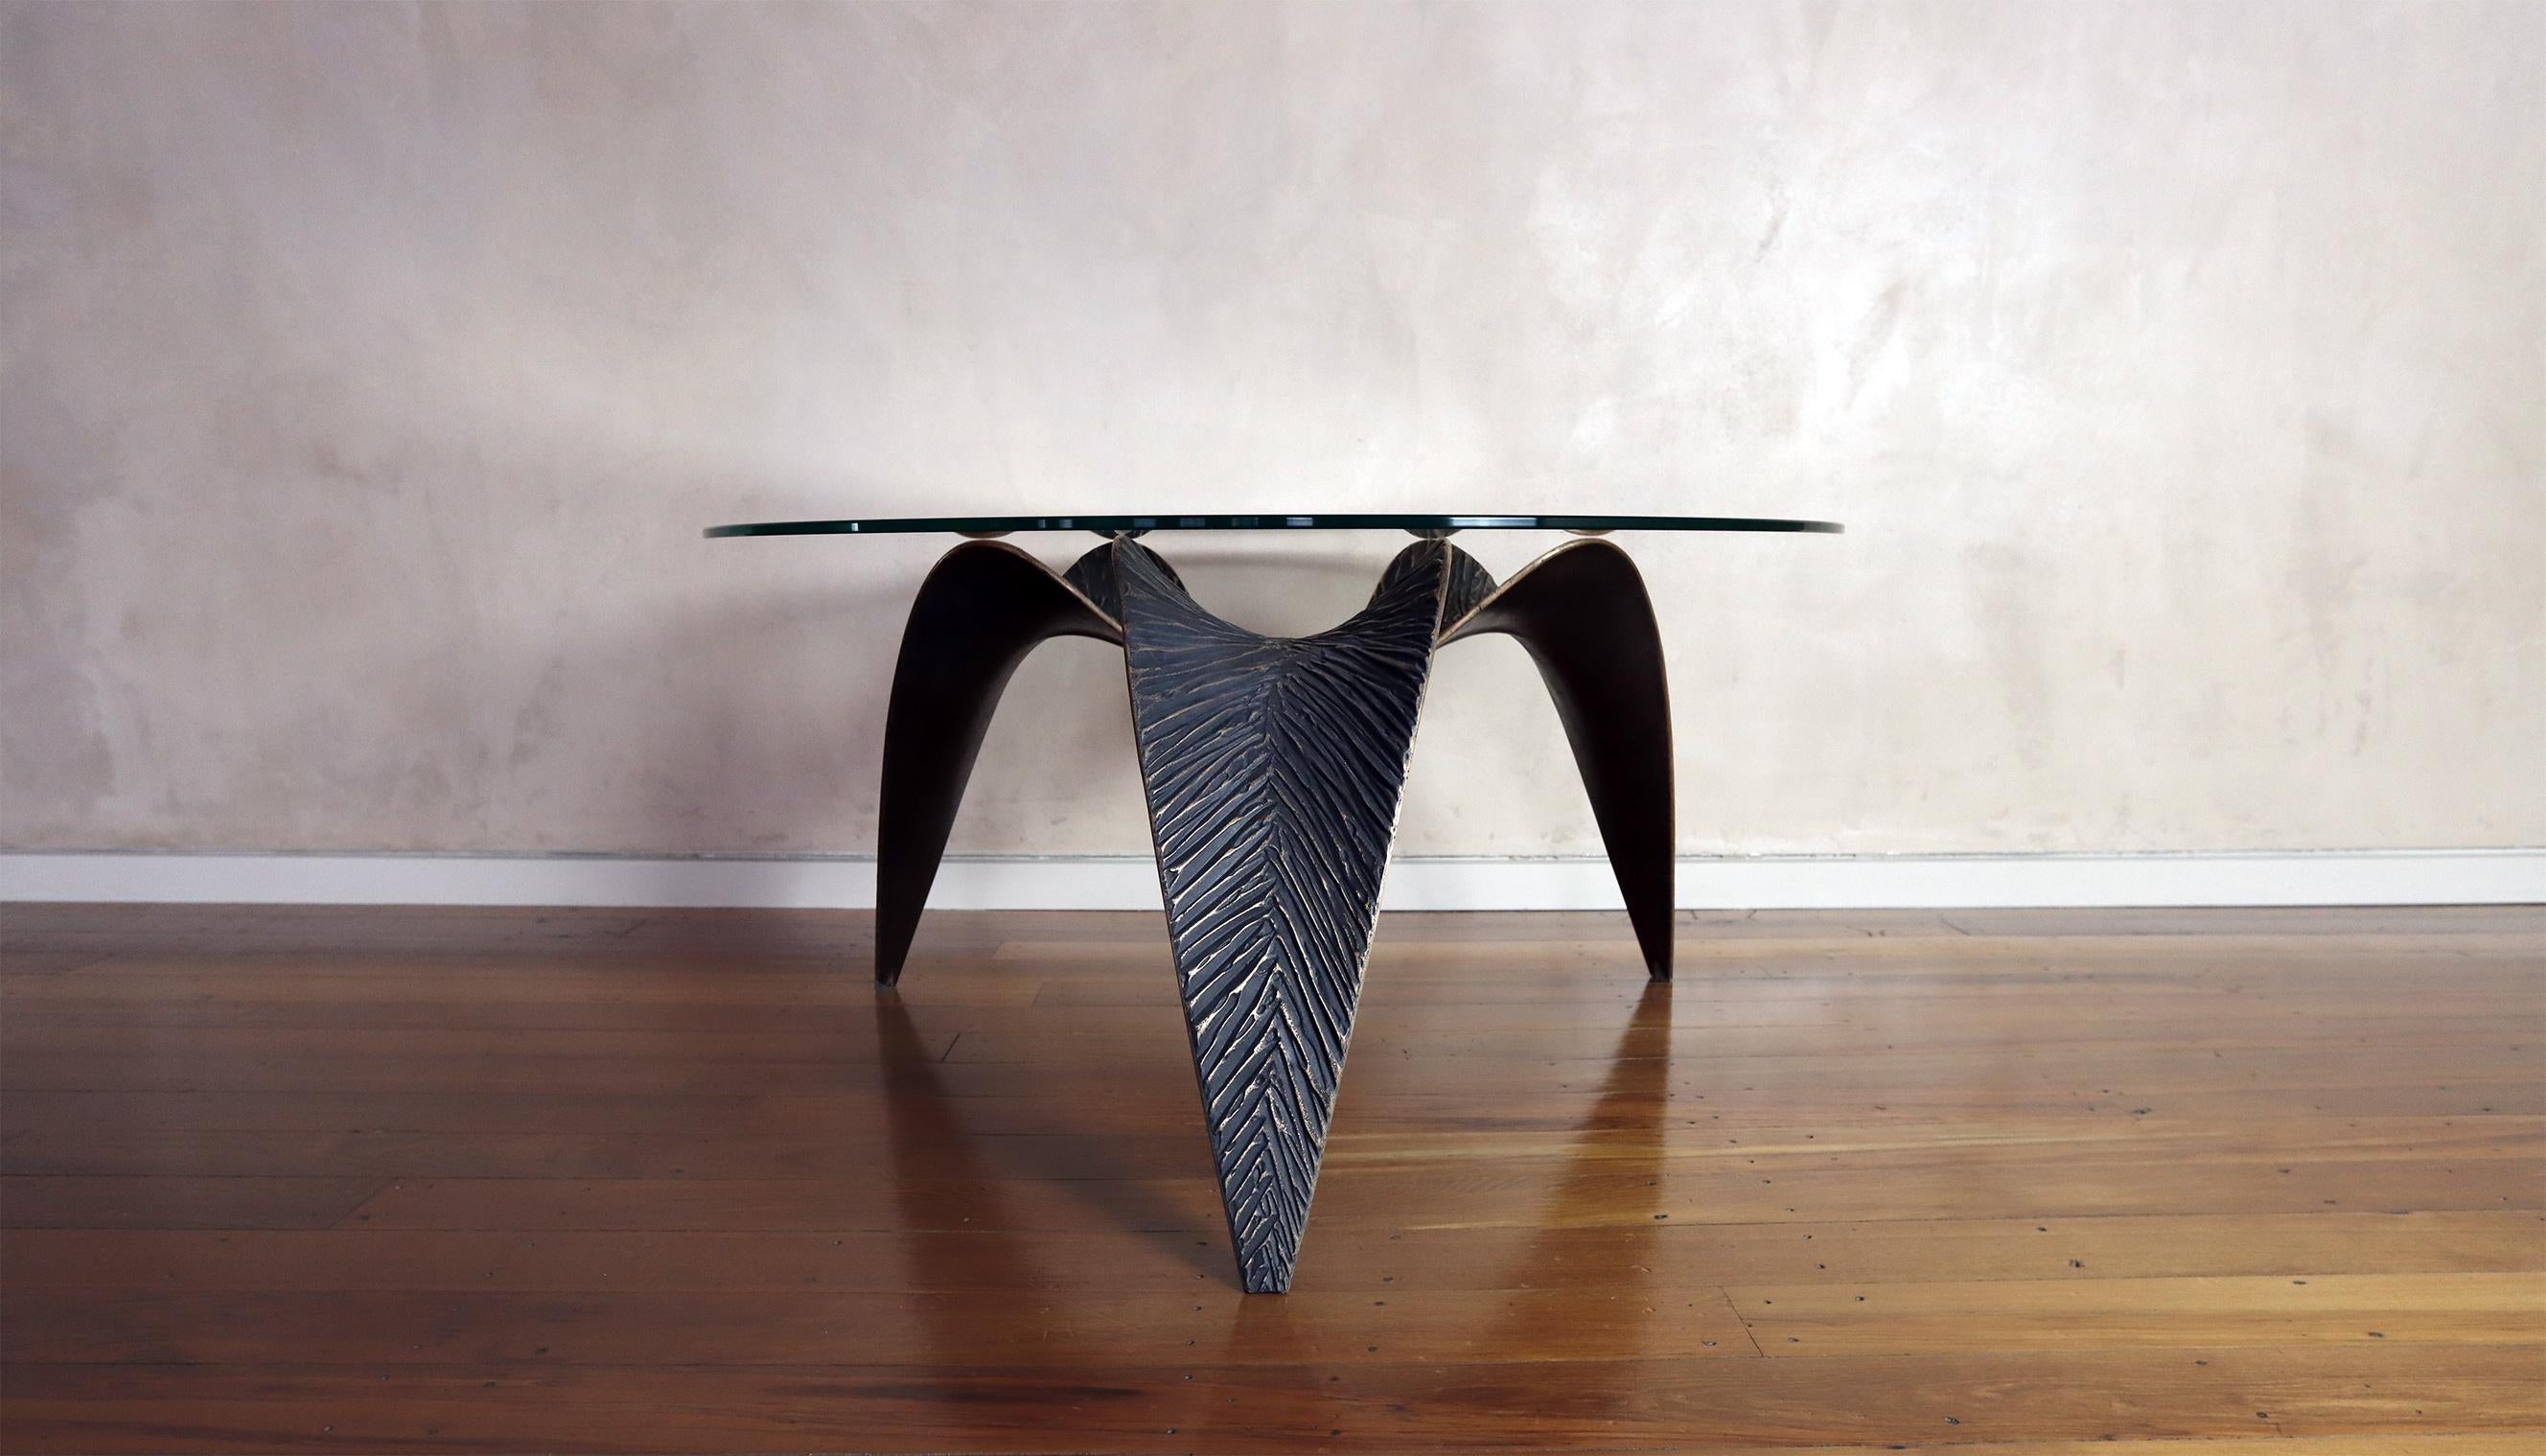 Der Nikau-Tisch ist ein exquisites Kunstwerk, das mit Leidenschaft und Präzision von erfahrenen Handwerkern in Neuseeland hergestellt wird. Dieser Tisch ist ein wahres Meisterwerk, das das Ambiente eines jeden Wohn-, Ess- oder Büroraums